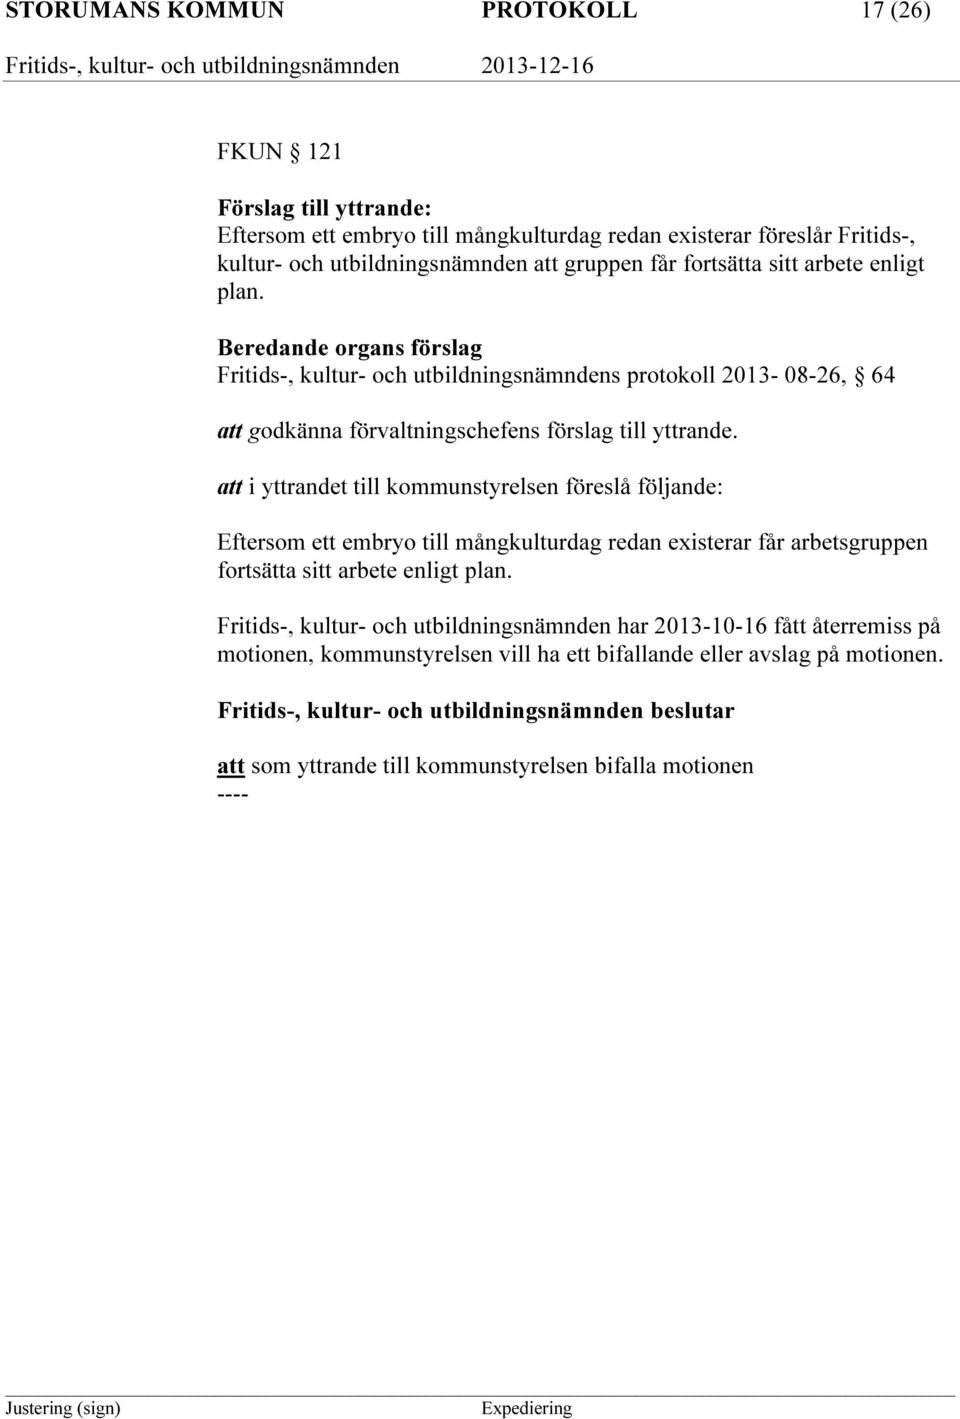 Beredande organs förslag Fritids-, kultur- och utbildningsnämndens protokoll 2013-08-26, 64 att godkänna förvaltningschefens förslag till yttrande.